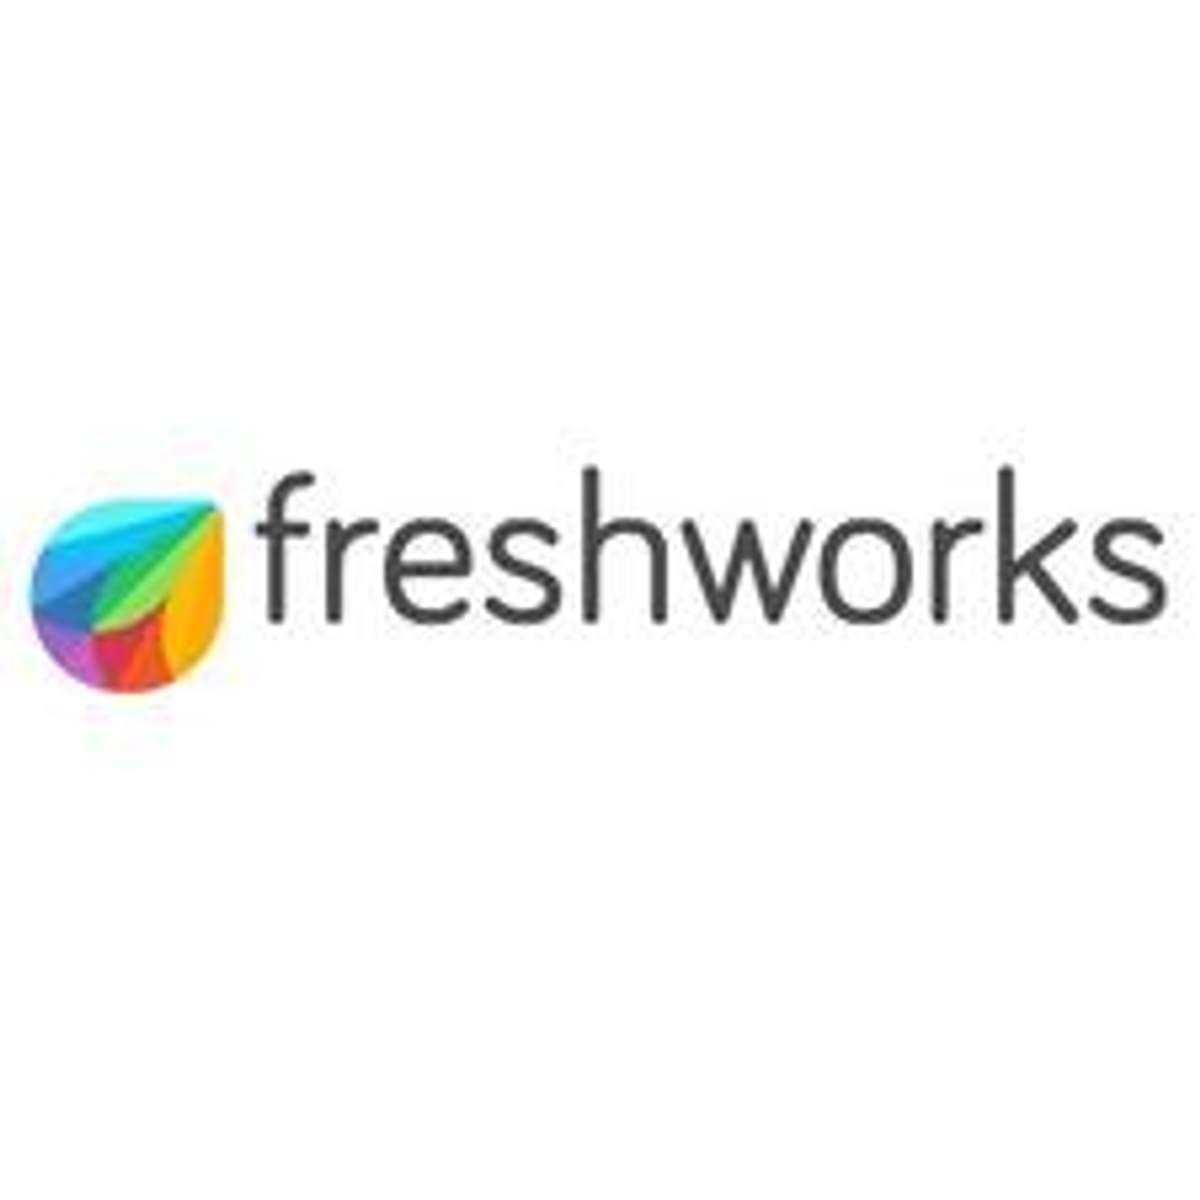 Freshworks koopt IT orkestratie en cloud beheer platform Flint image